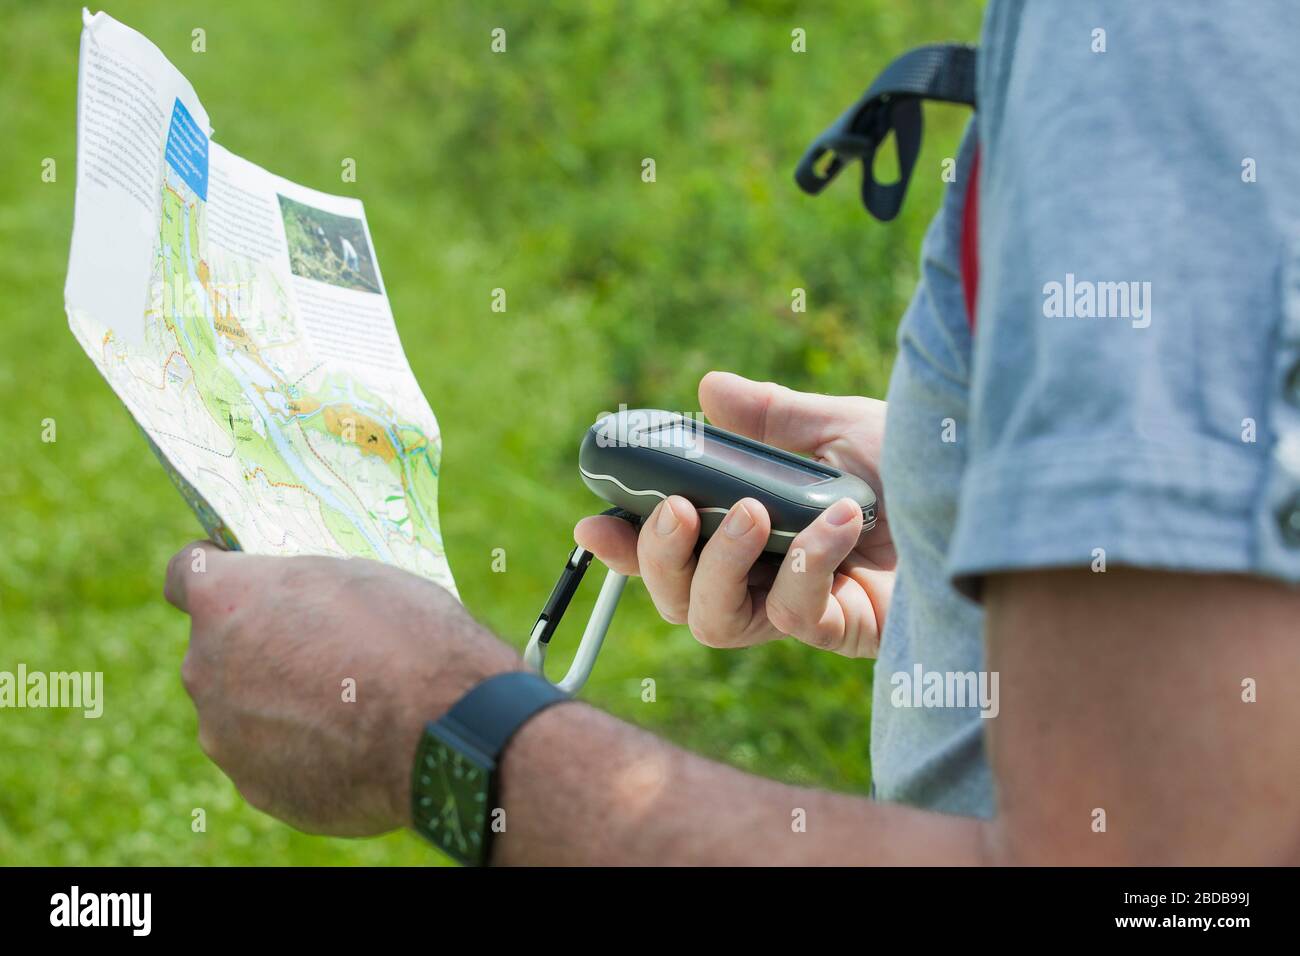 Mann hält einen GPS-Empfänger und plant in der Hand. Handheld-GPS-Geräte werden überwiegend in der Freizeitreisenbranche zum gehen und Wandern eingesetzt. Stockfoto